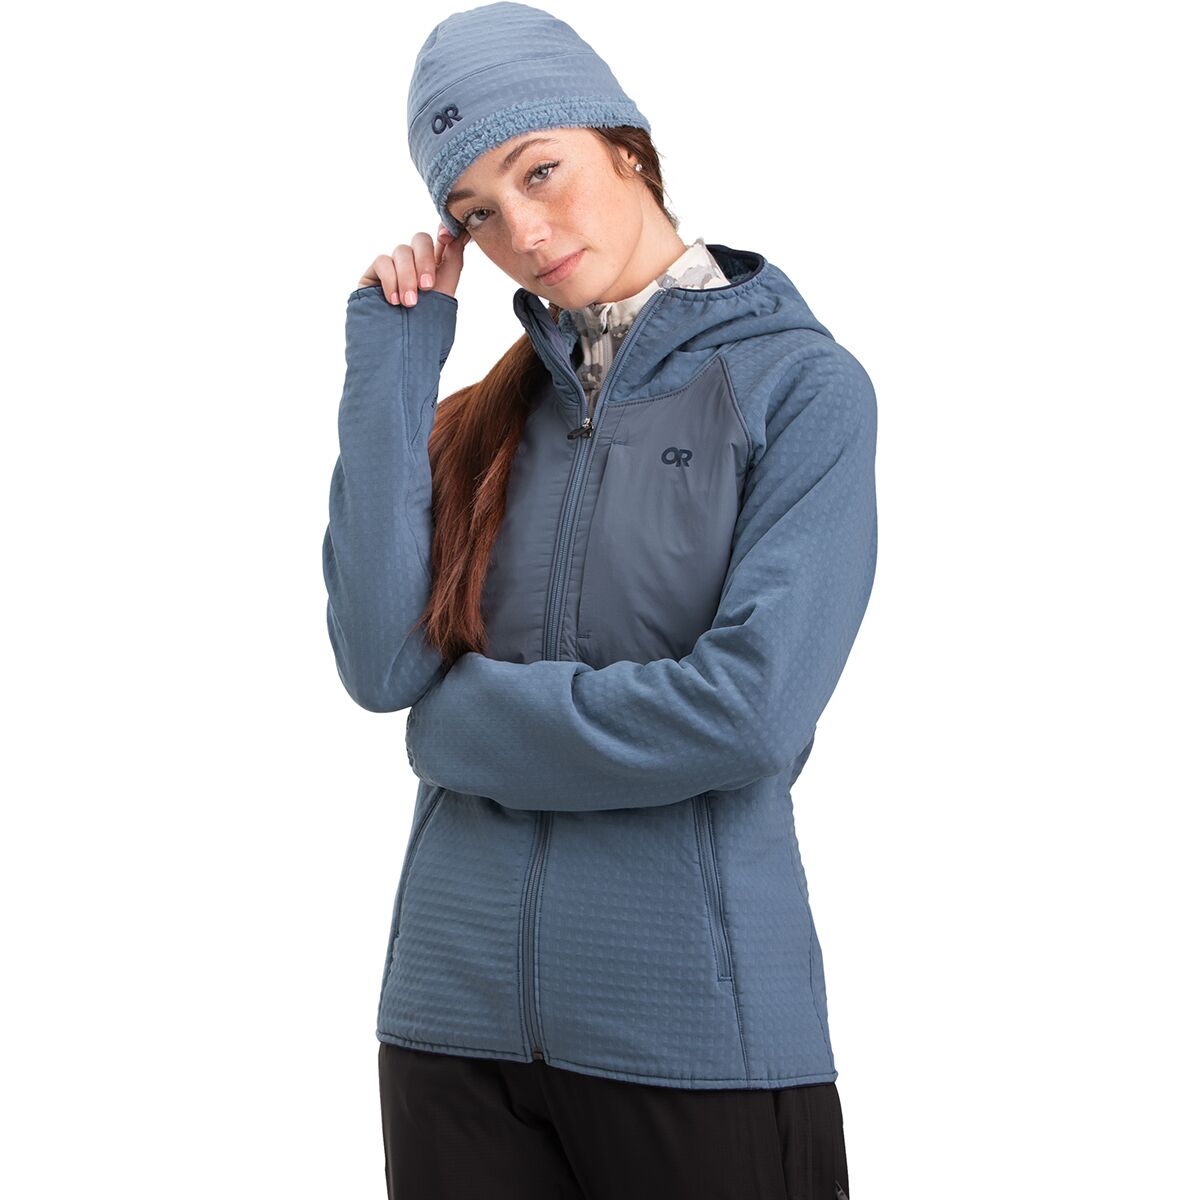 Outdoor Research Vigor Plus Fleece Hooded Jacket - Women's